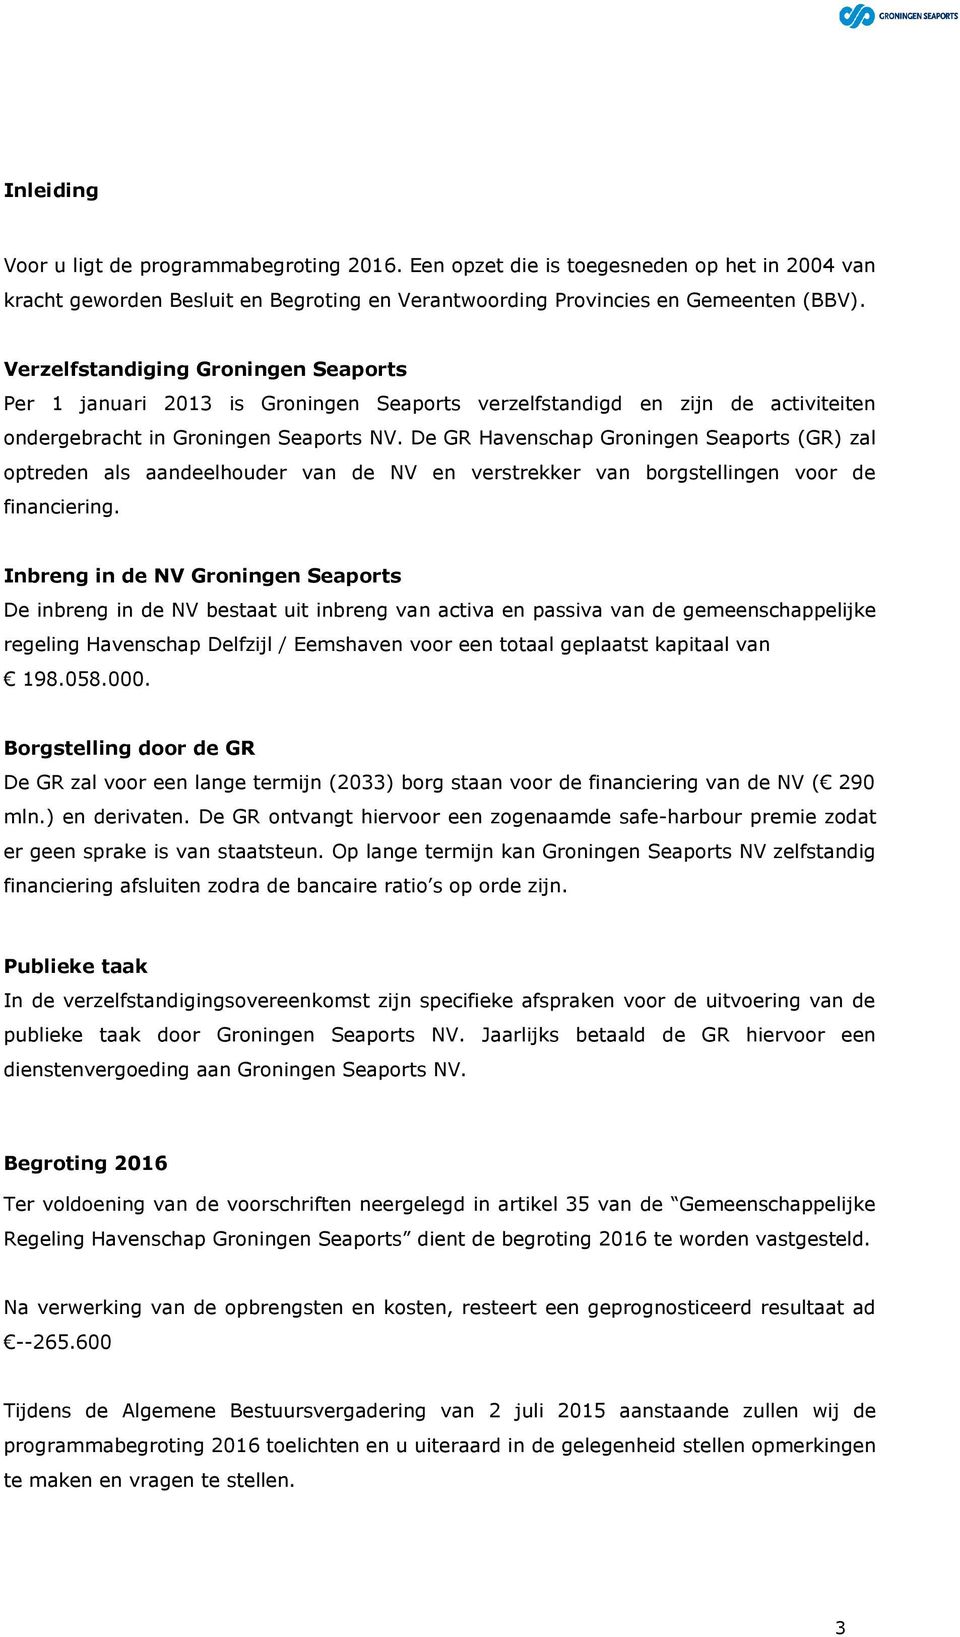 De GR Havenschap Groningen Seaports (GR) zal optreden als aandeelhouder van de NV en verstrekker van borgstellingen voor de financiering.